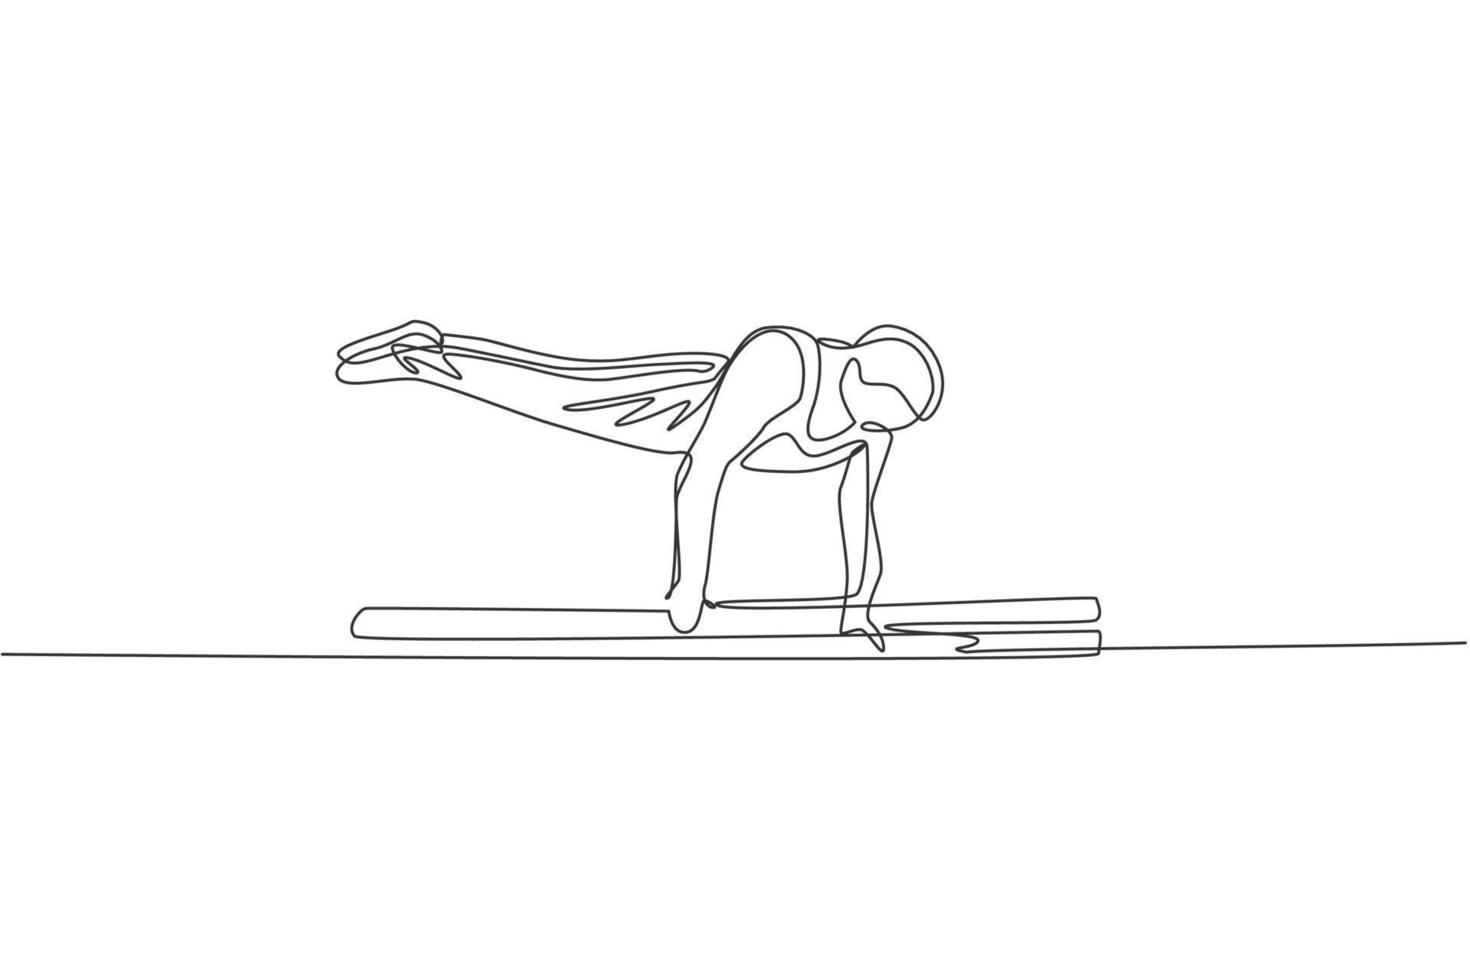 enda kontinuerlig linjeteckning ung vacker professionell gymnast man utföra akrobatiska rörelser. parallella barer träning och stretching koncept. trendiga en rad rita design vektorillustration grafik vektor